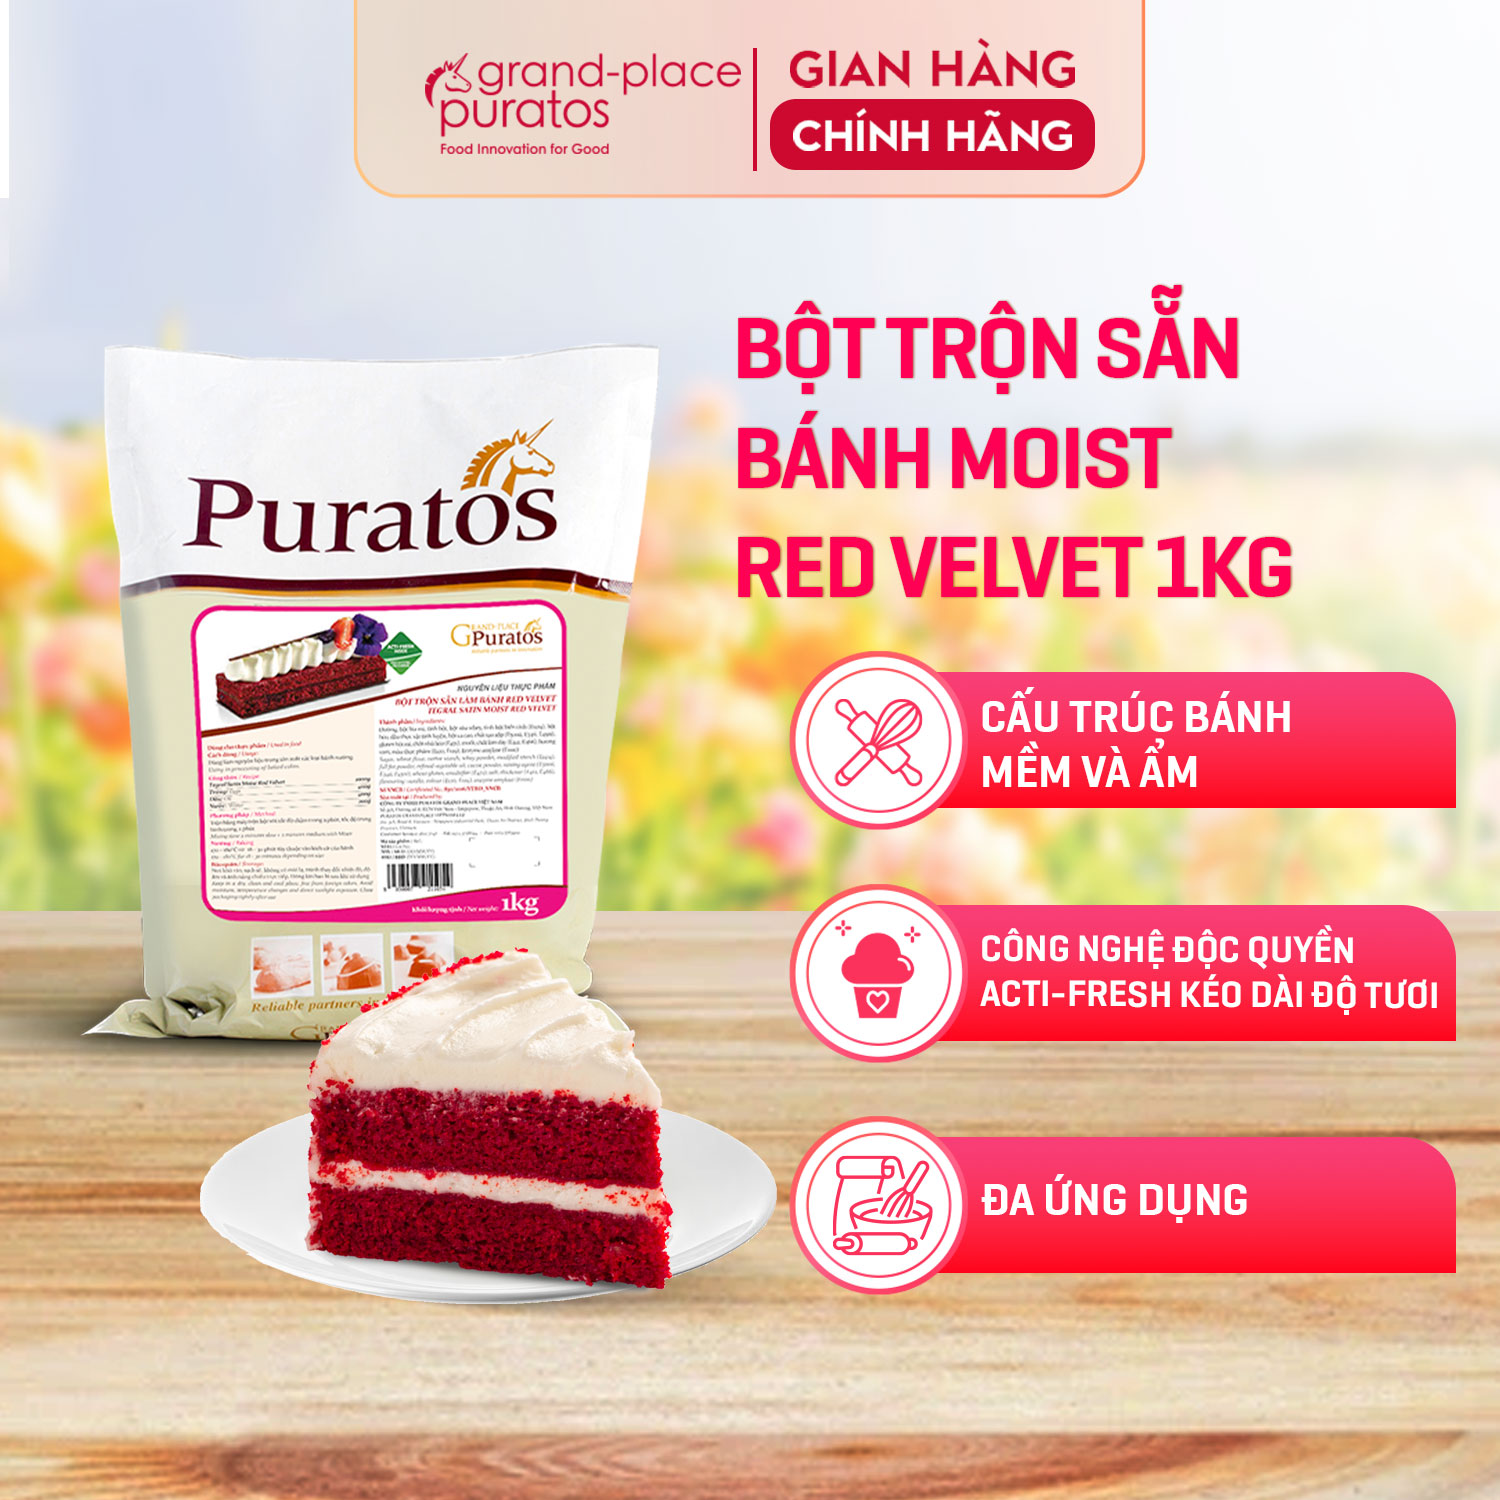 Bột Trộn Sẵn Làm Bánh Red Velvet Puratos Grand-Place VN -1kg